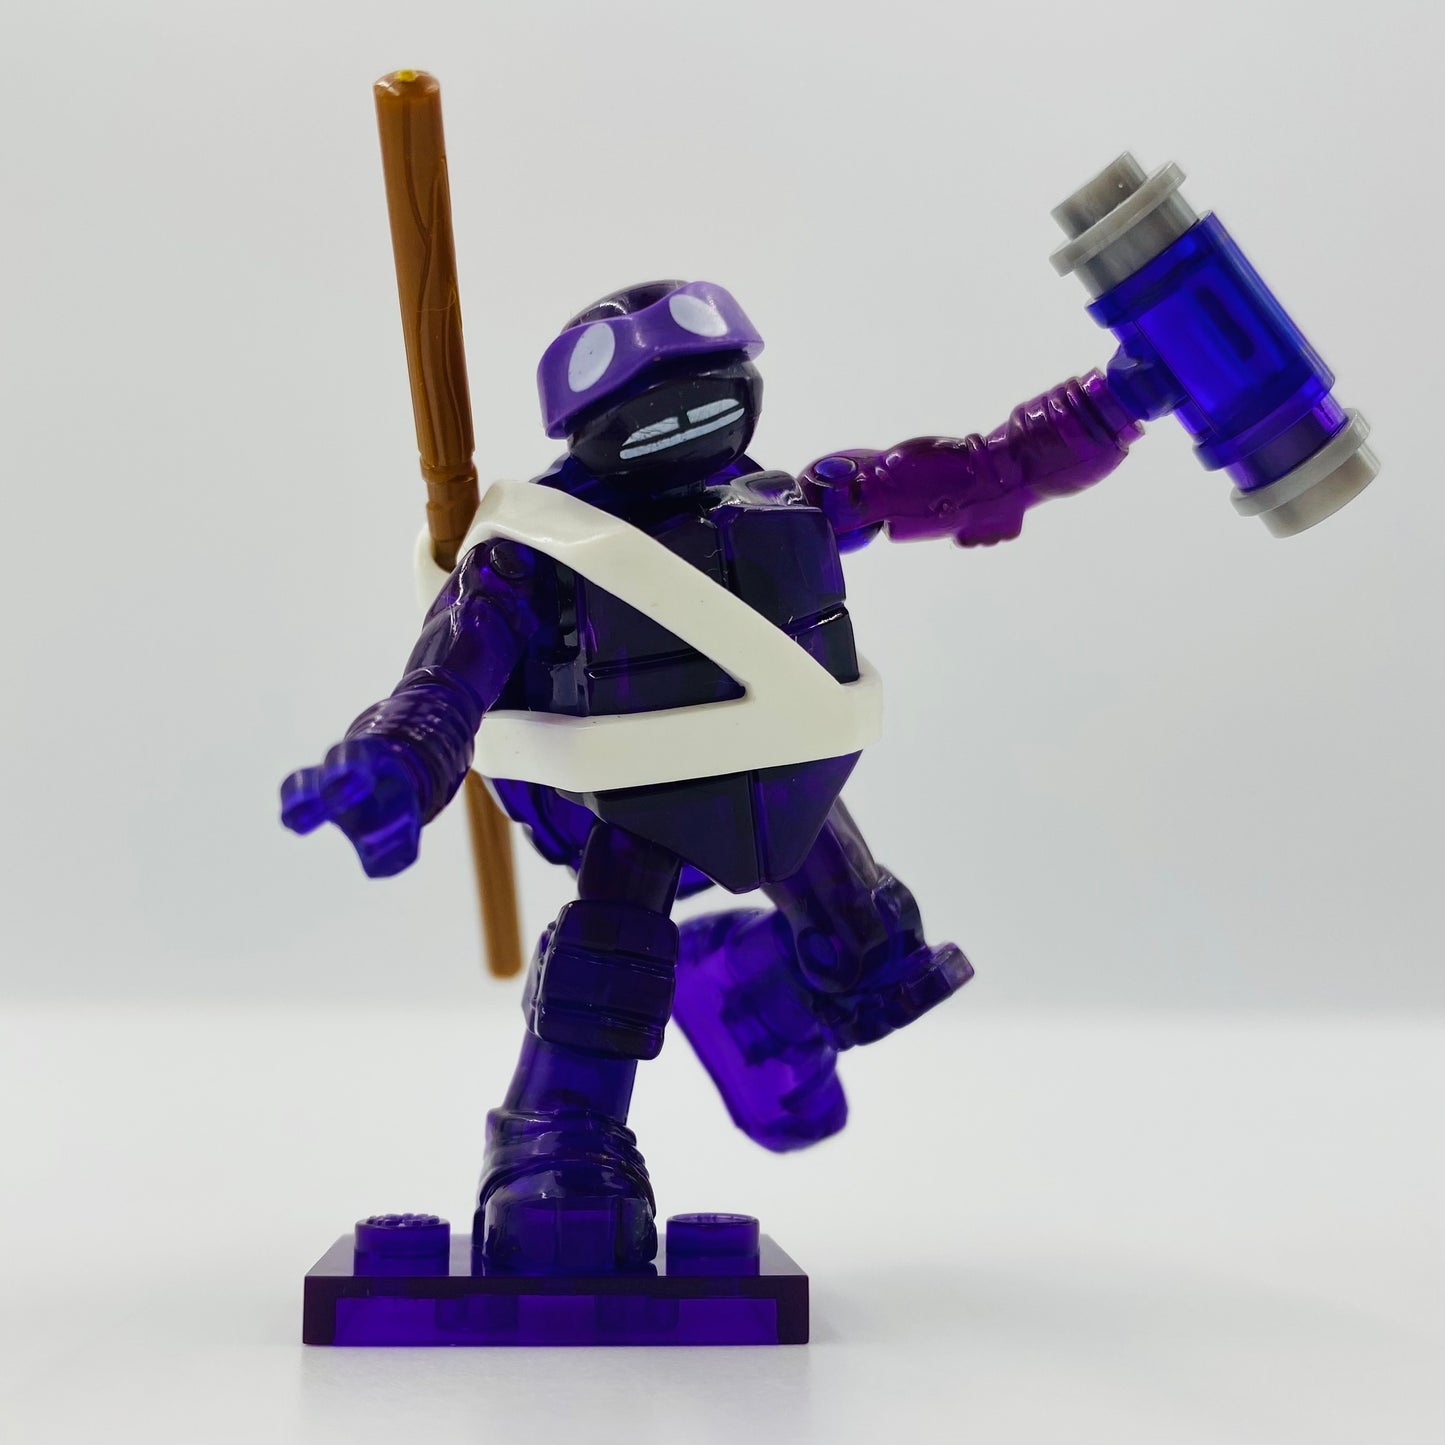 Mega Bloks Teenage Mutant Ninja Turtles series 2 Donatello loose 2” micro action figure (2015) Mattel